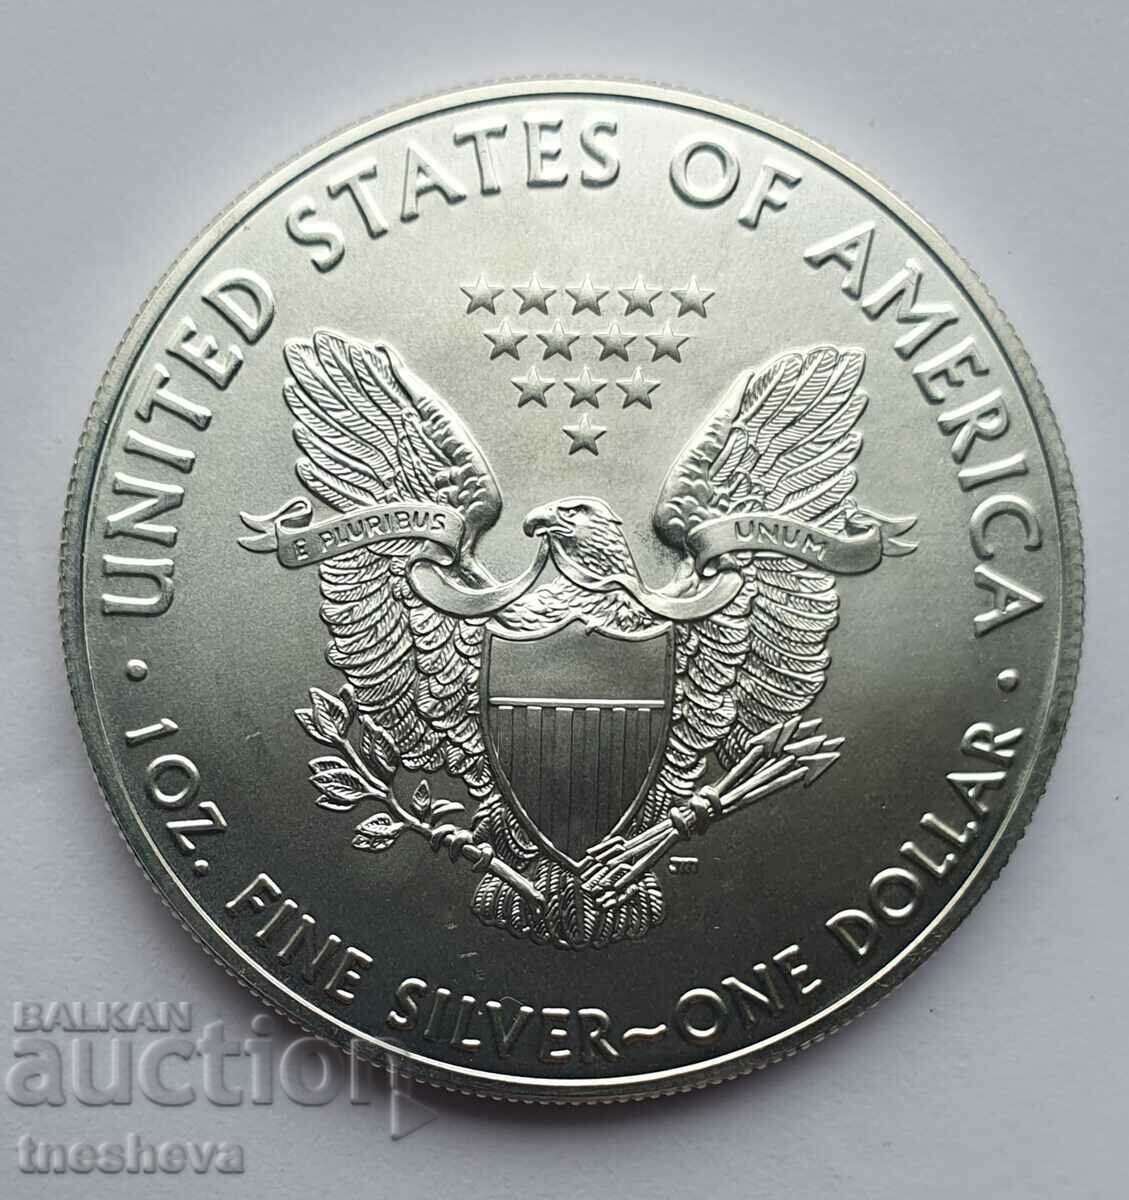 SILVER 1 oz 2018 AMERICAN EAGLE νέο νόμισμα-